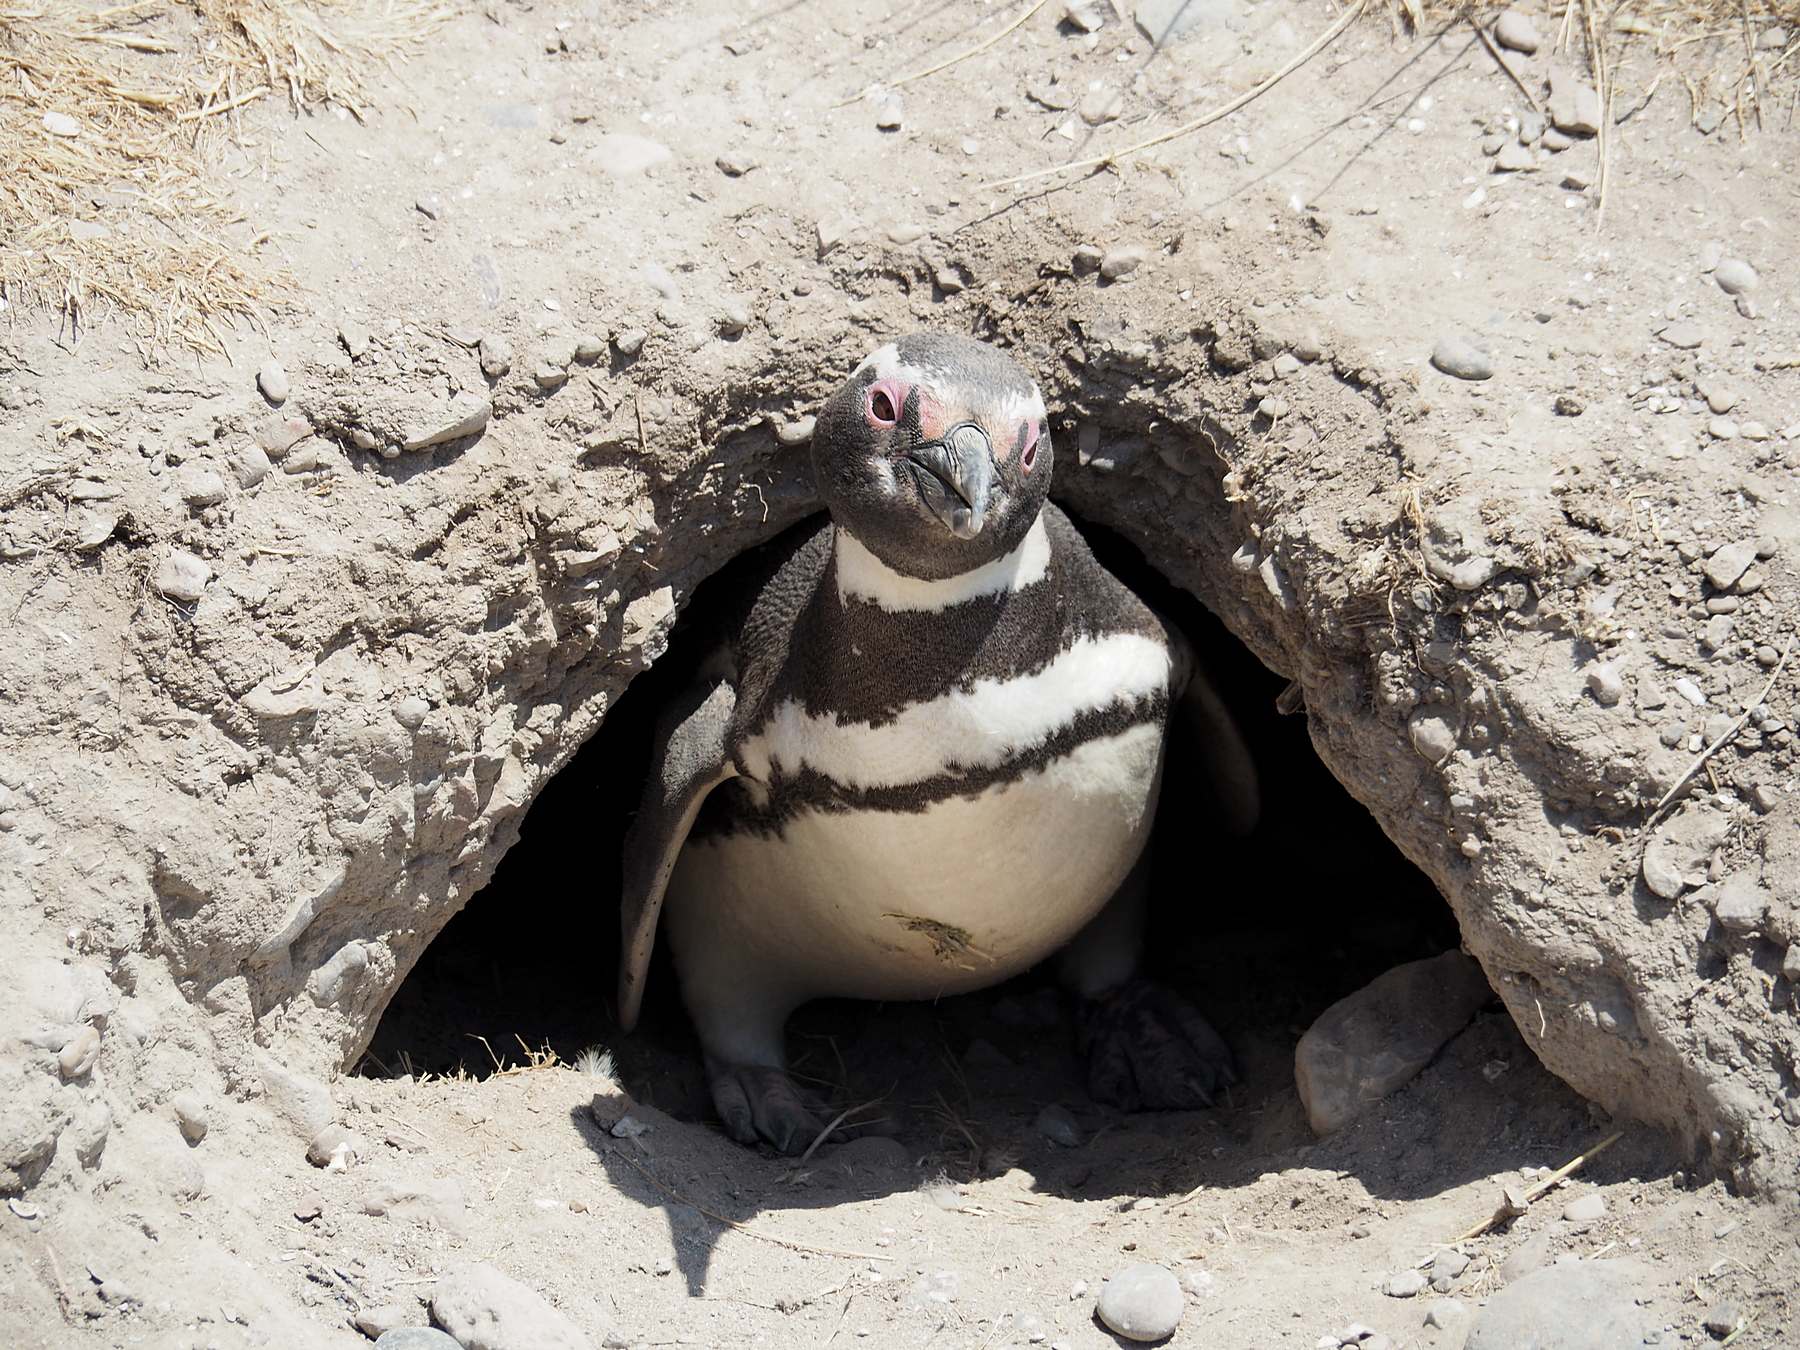 Kaum zu glauben, dass die Pinguine diese Höhlen selbst graben